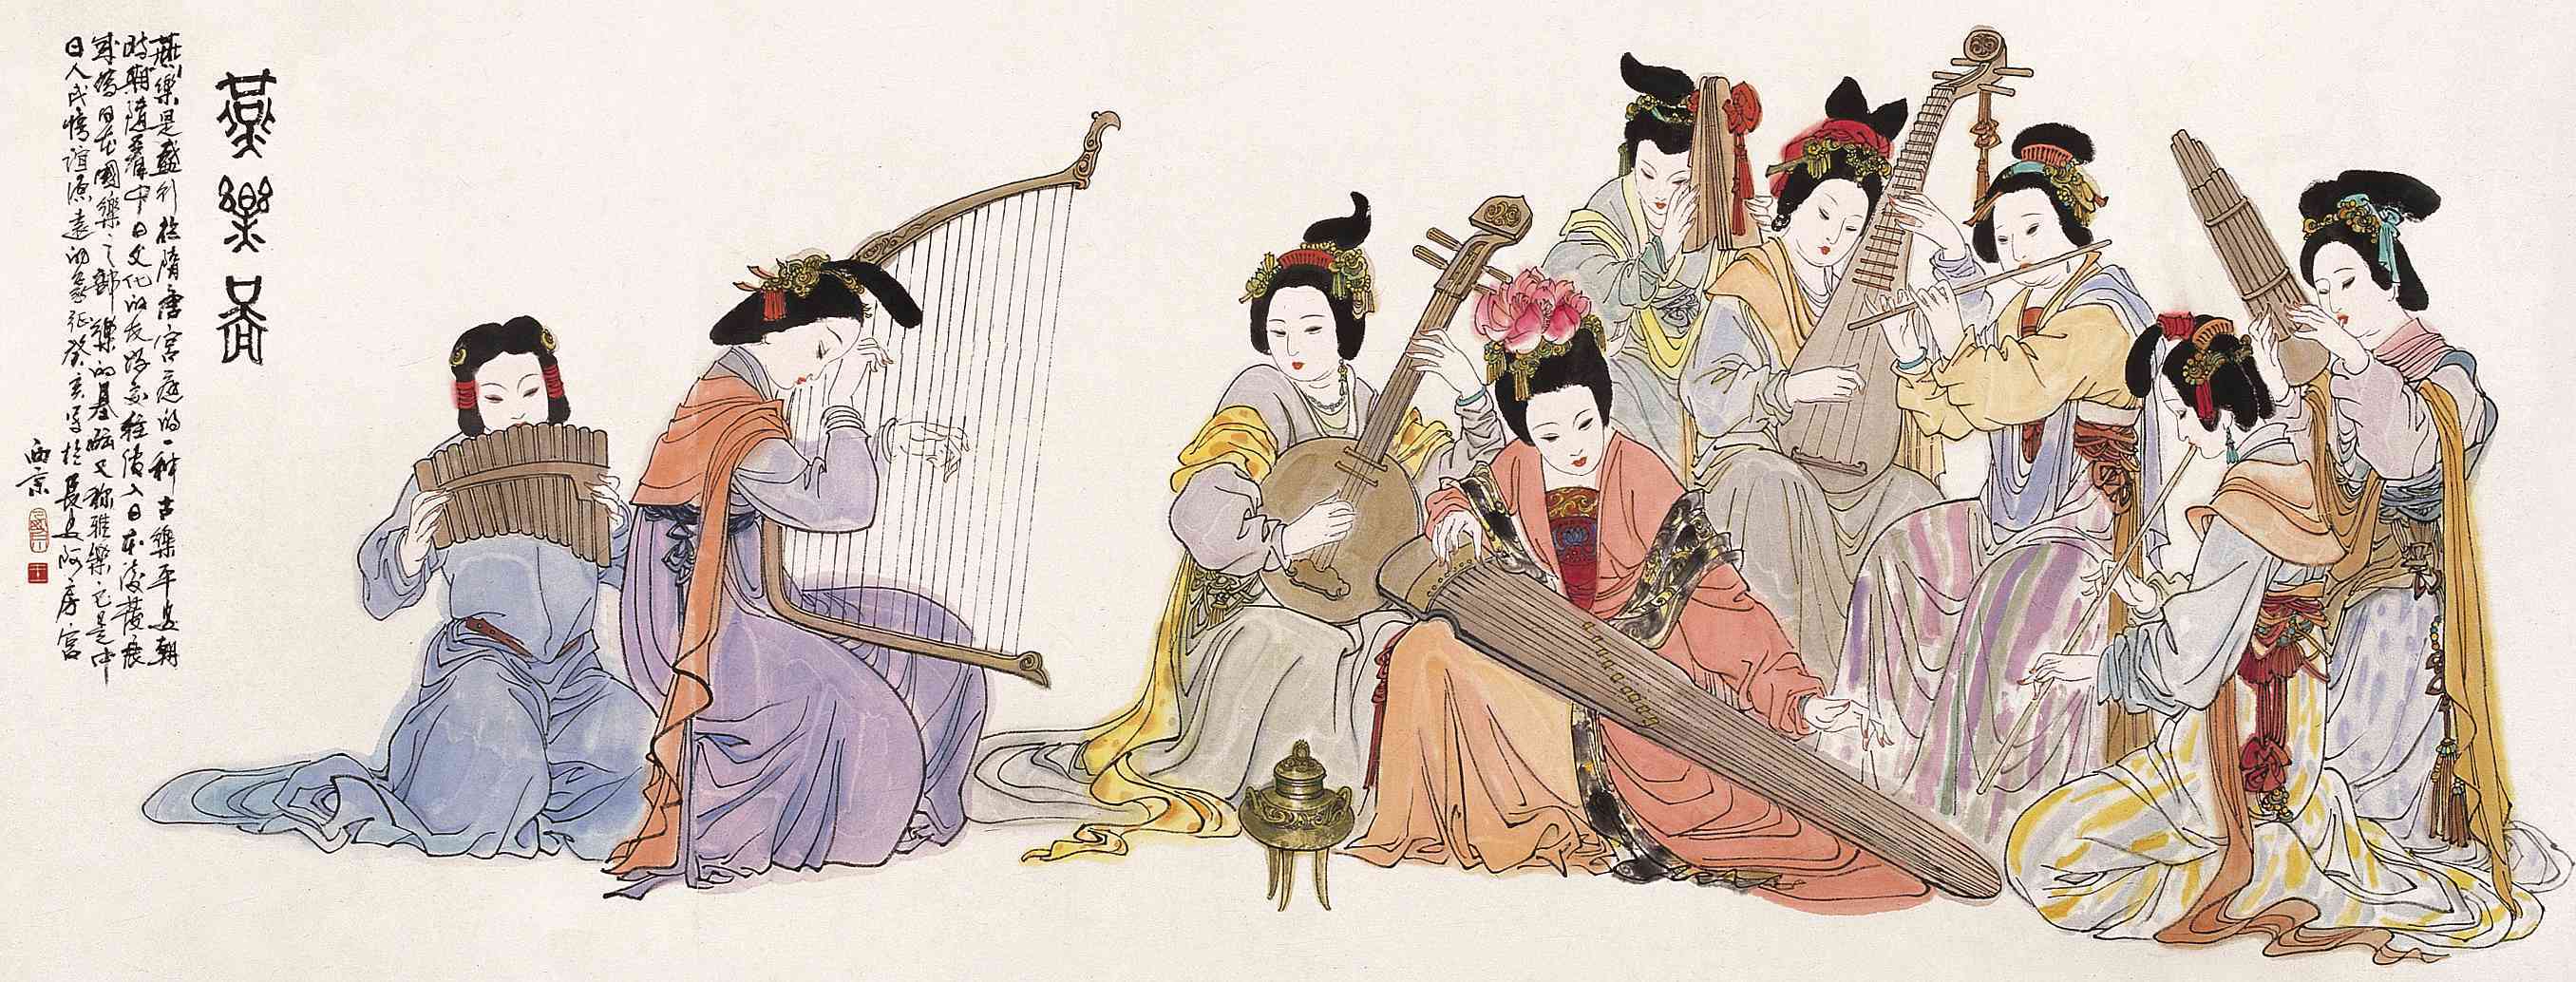 燕乐起源于汉魏以来汉族传统音乐的积累和外来音乐的大规模输入.